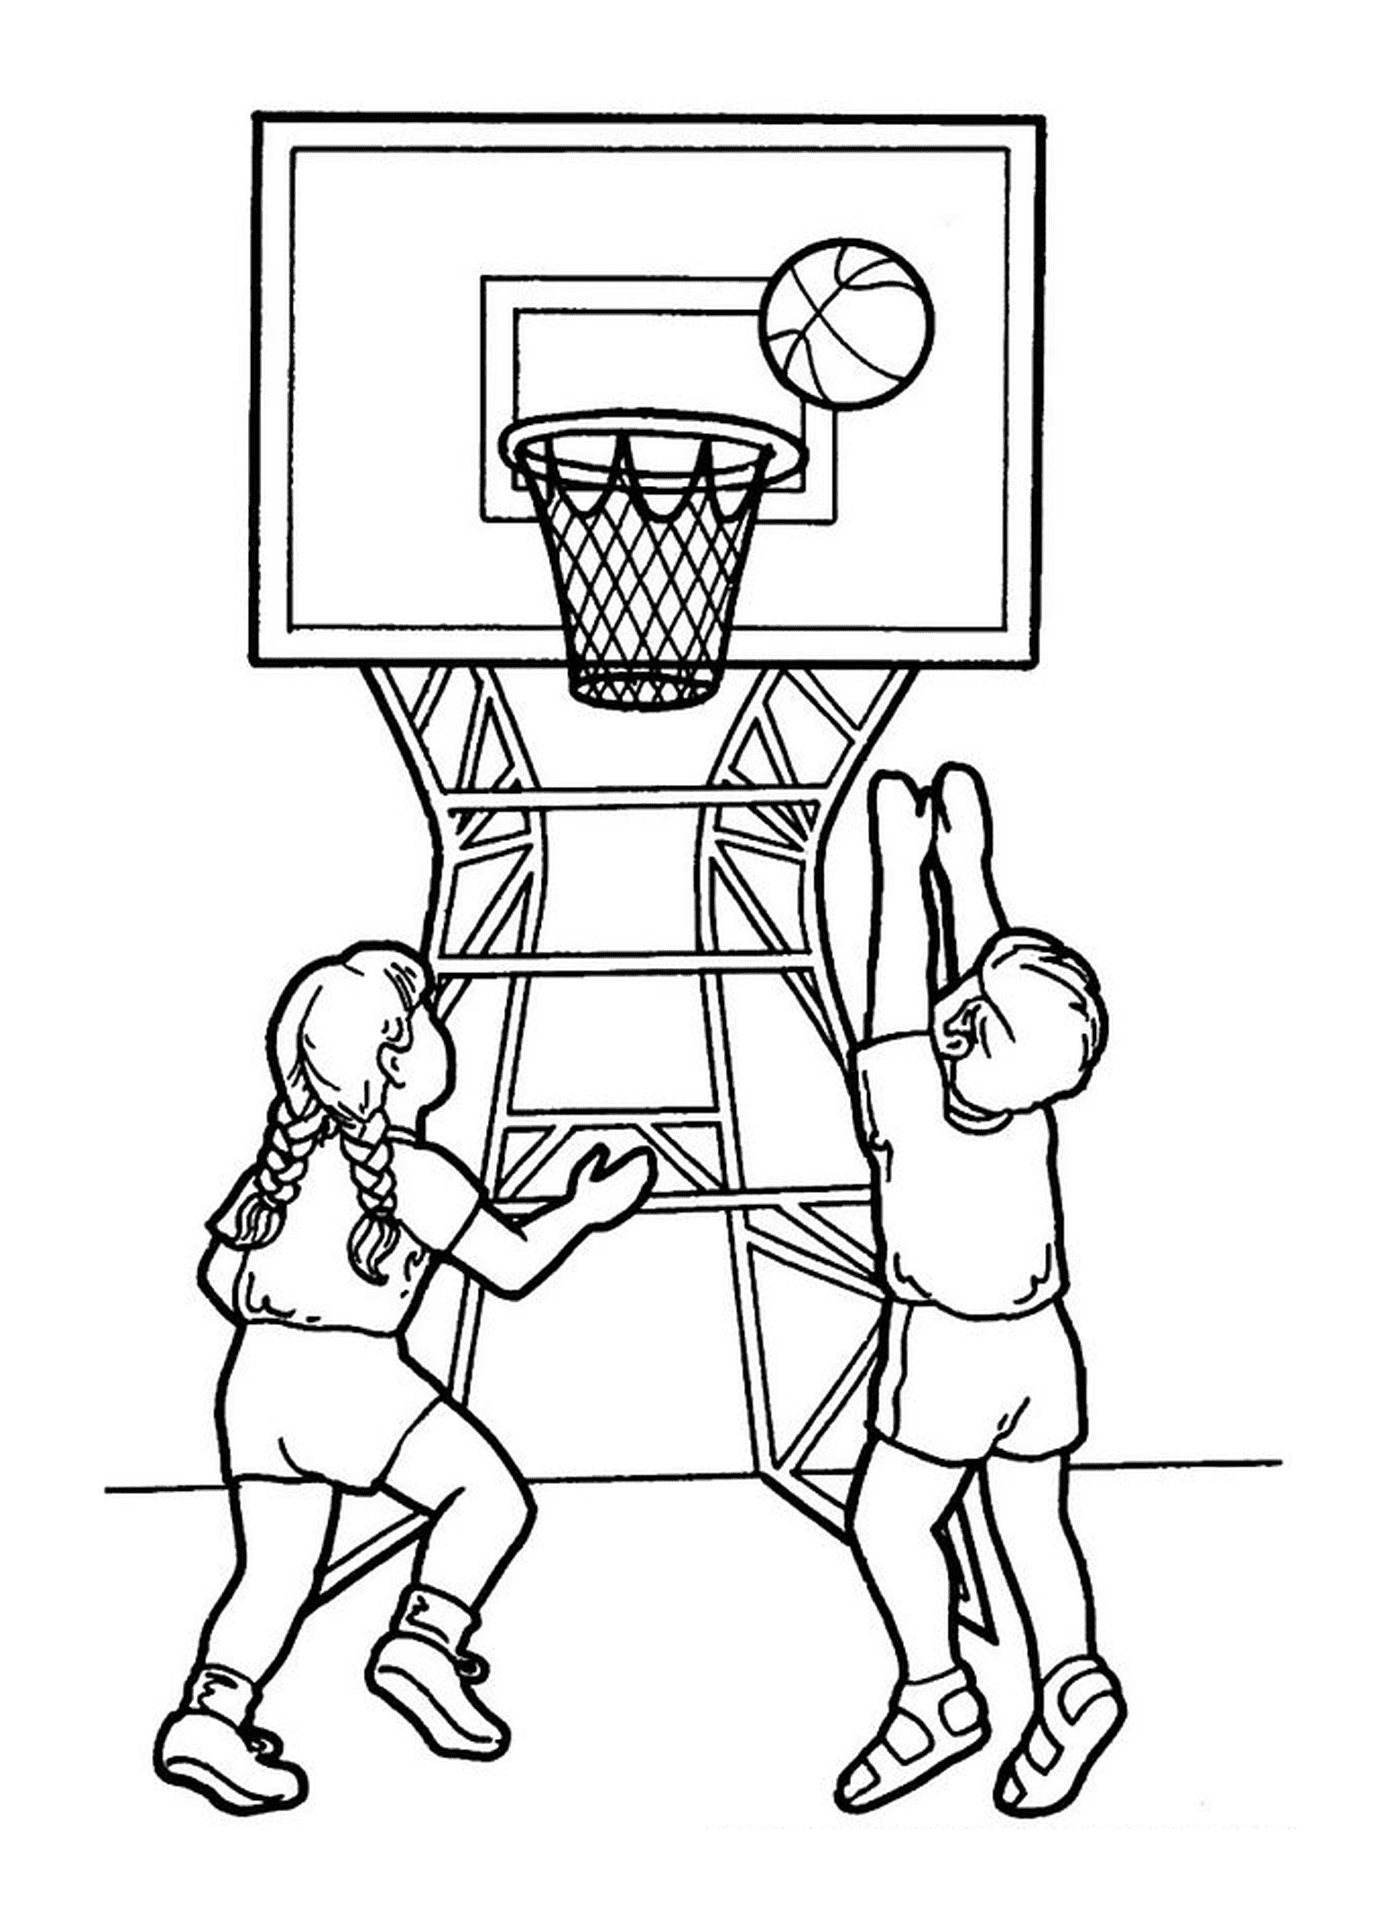  Мальчик и девочка играют в баскетбол 